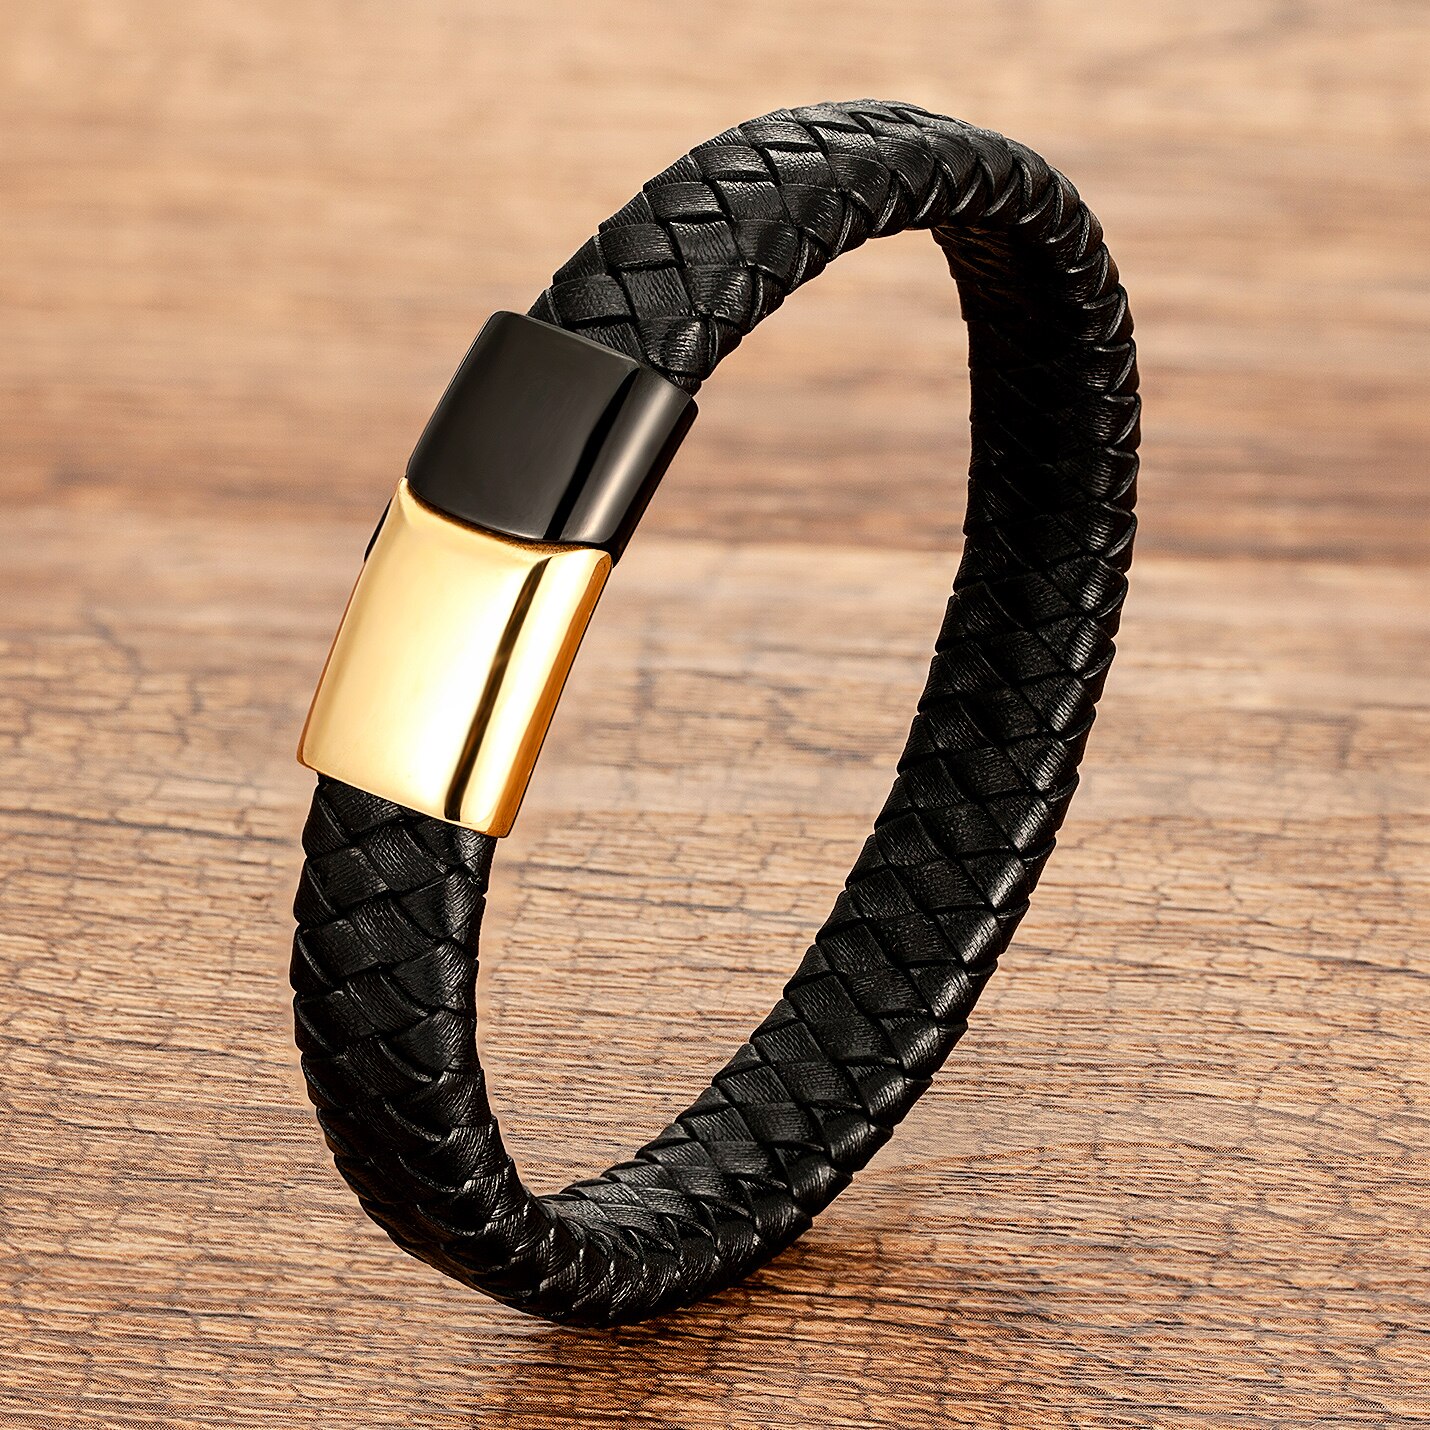 Thomas Sabo Black Leather Bracelet X0053-008-11 | Bracelets for men, Leather  bracelet, Black leather bracelet